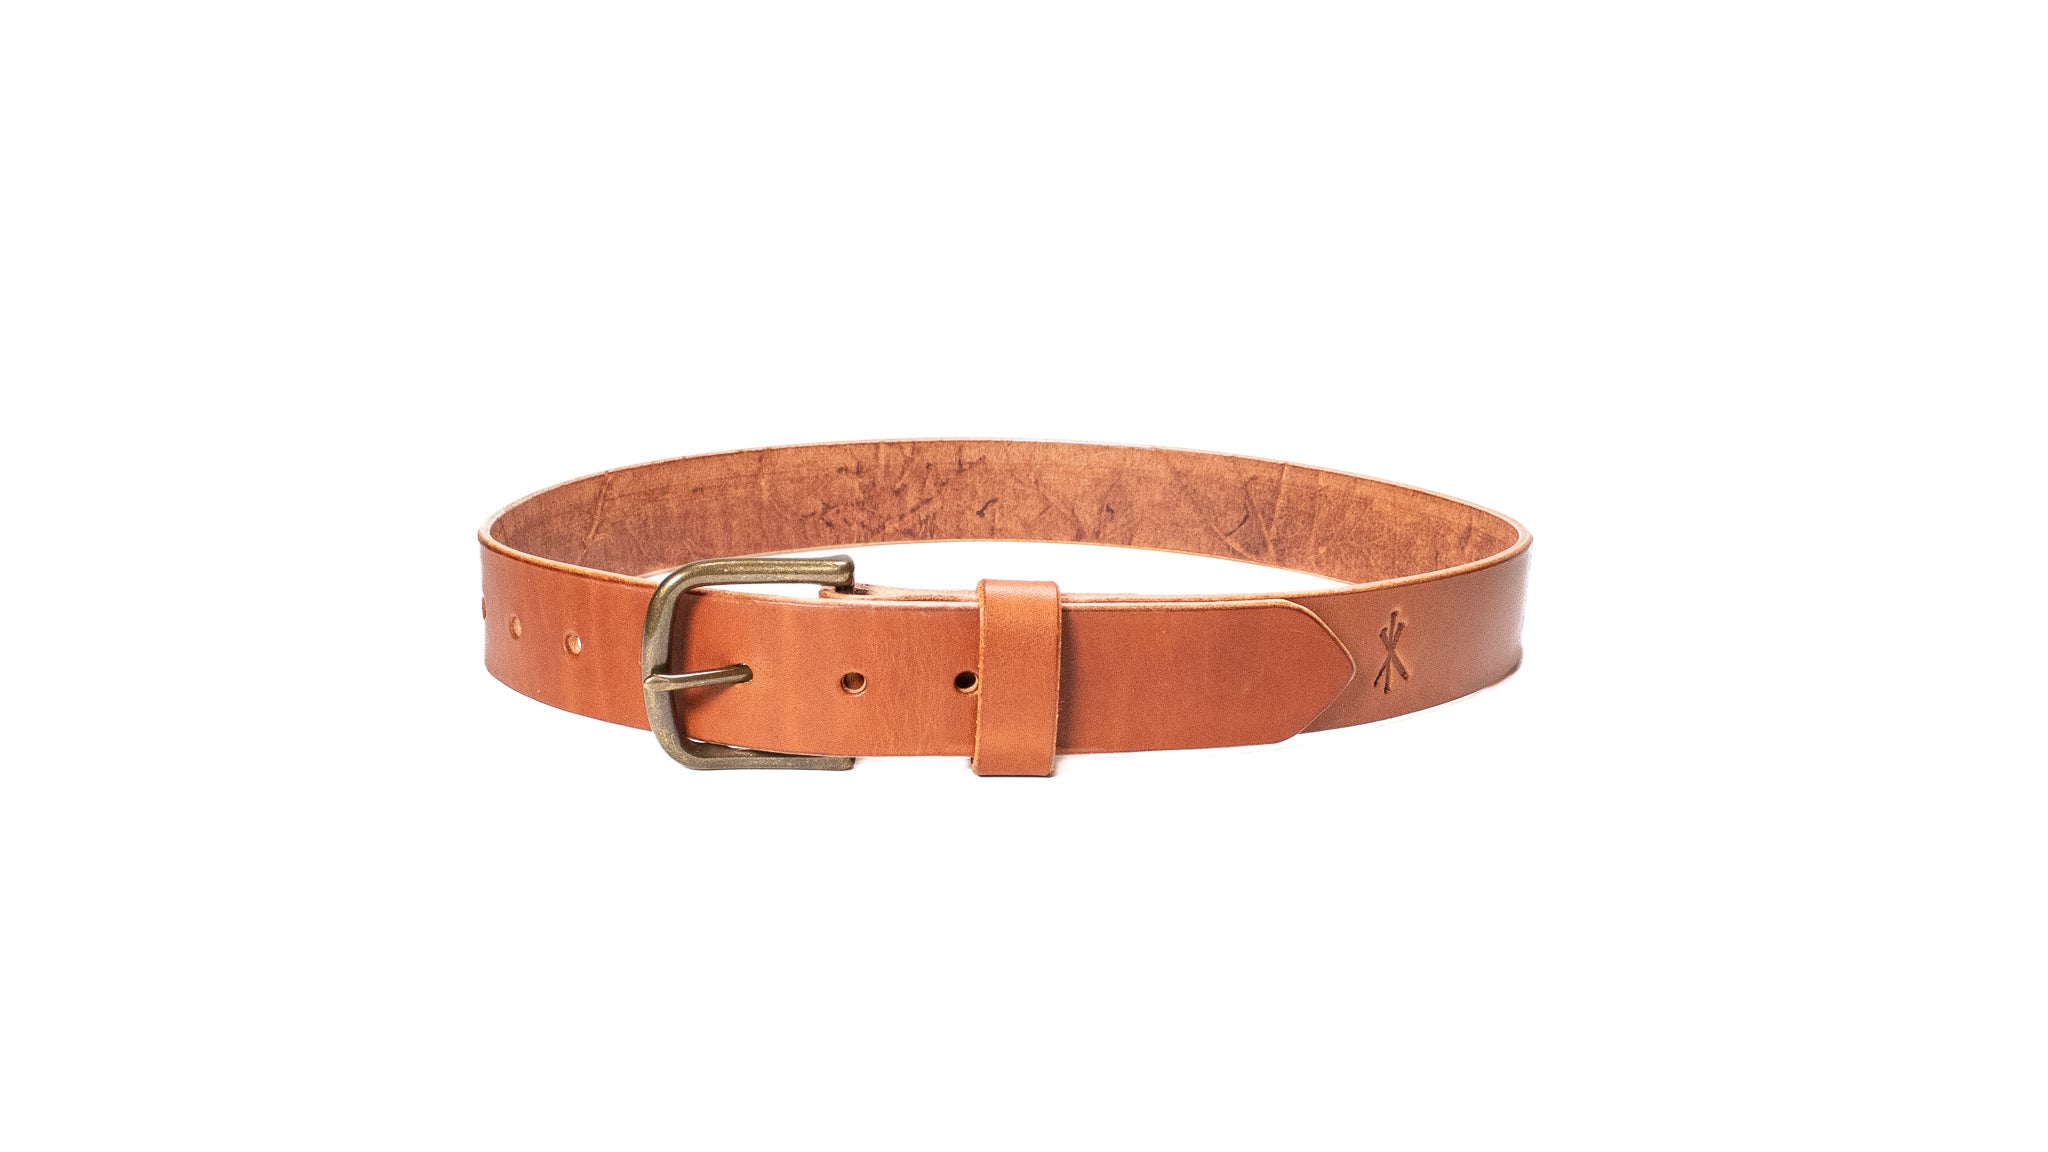 Premium leather belt